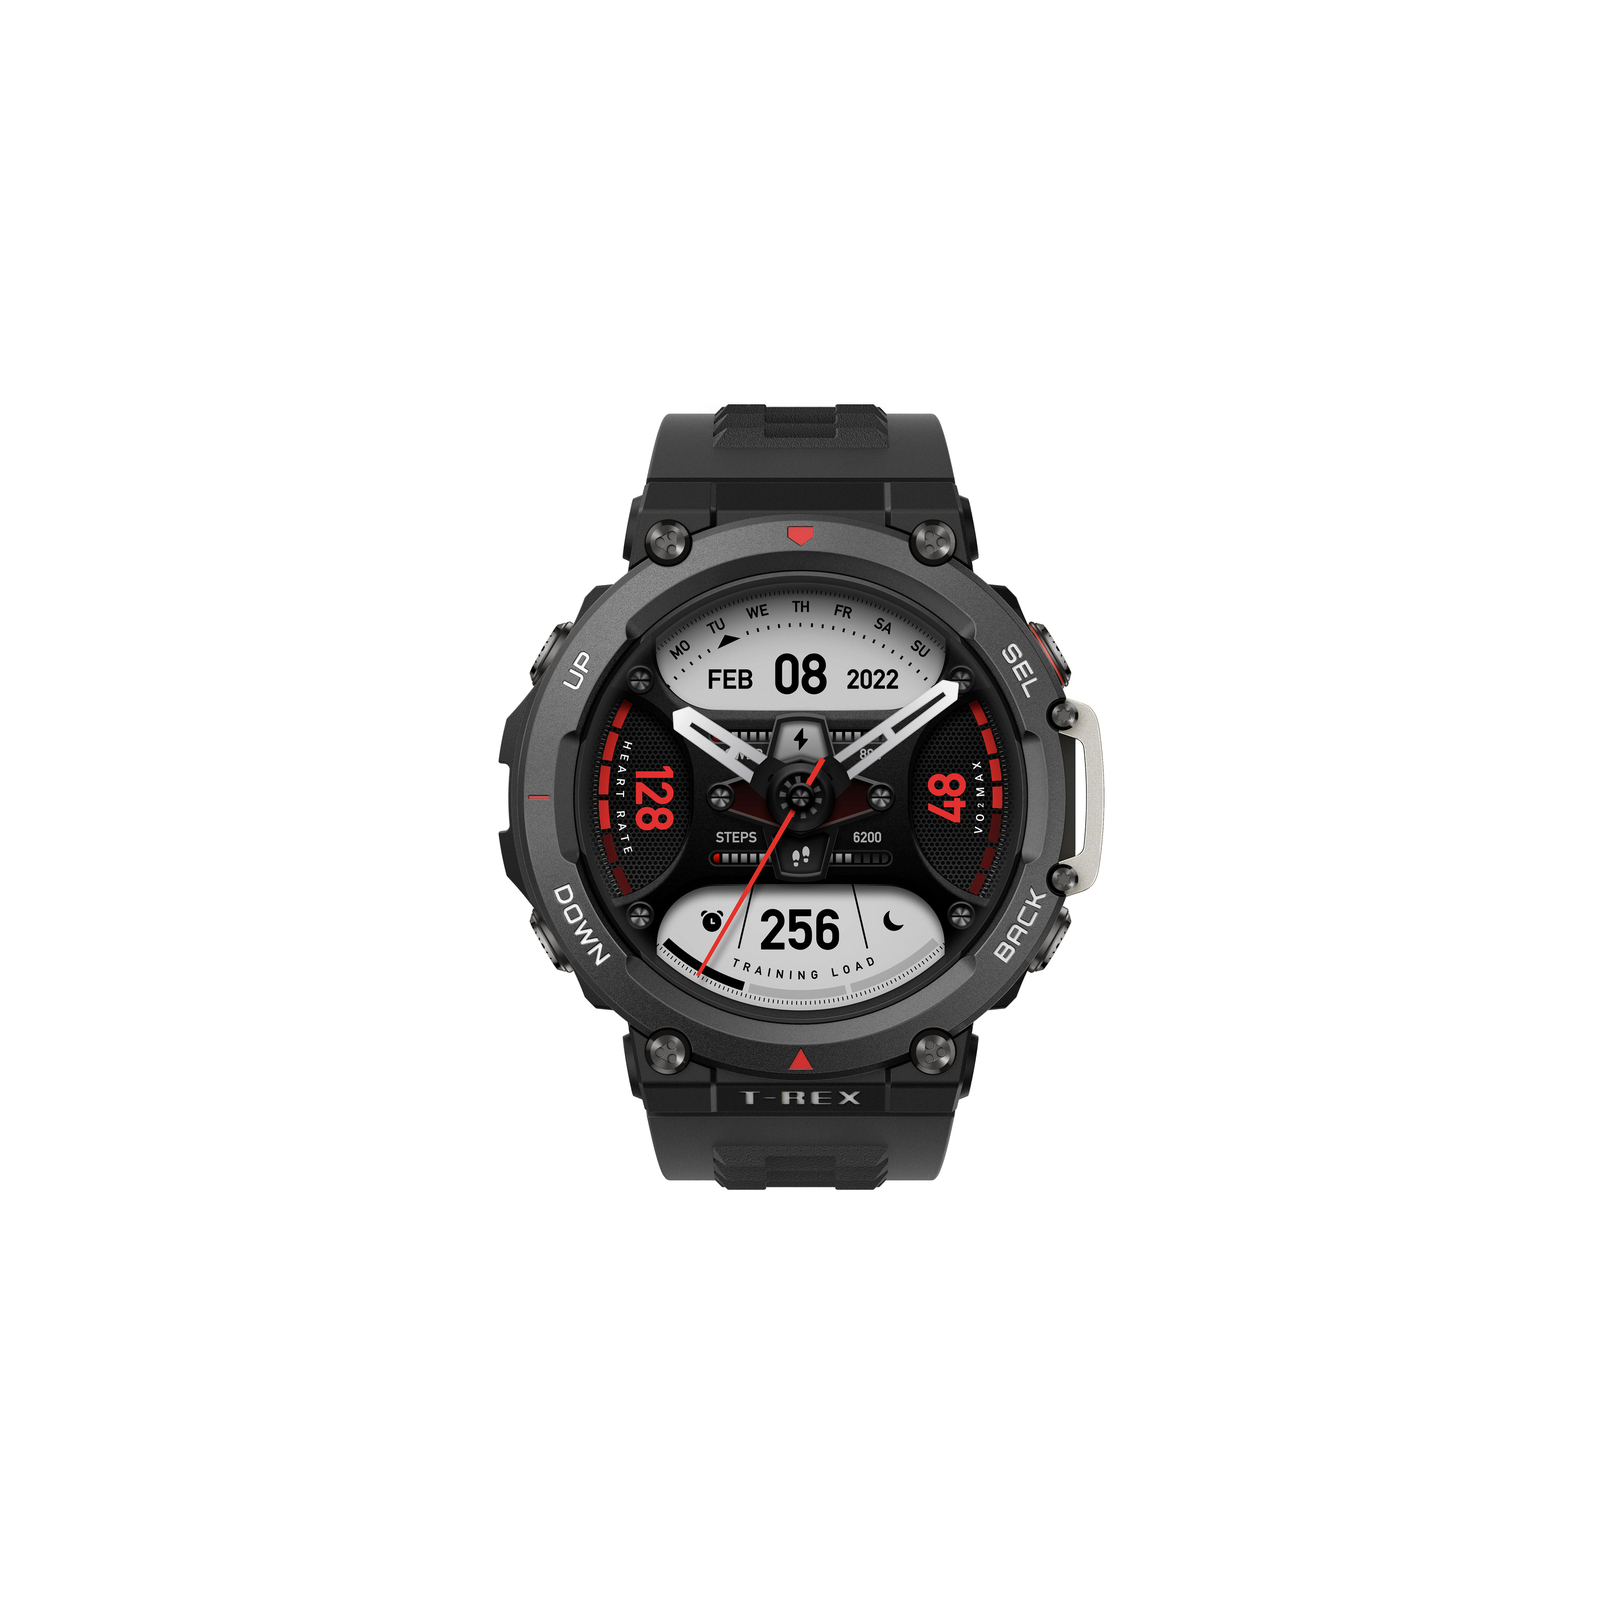 Смарт-часы Amazfit T-REX 2 Ember Black (955551) изображение 3